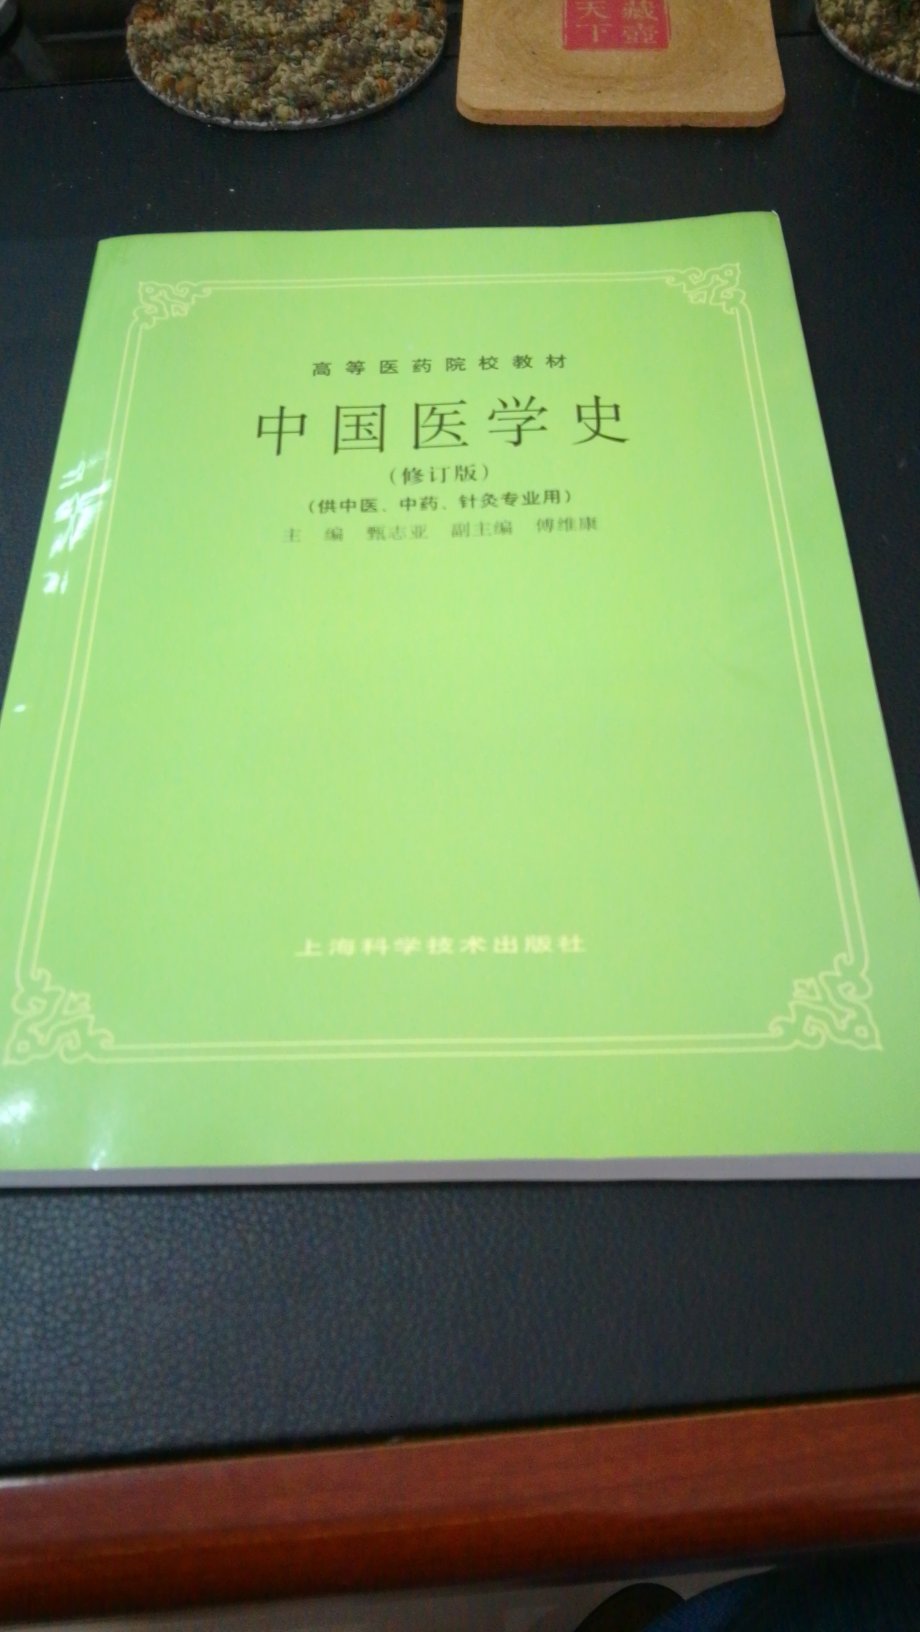 《中国医学史》1997年修订版，资料截止1996年。排版紧凑，字体较小。